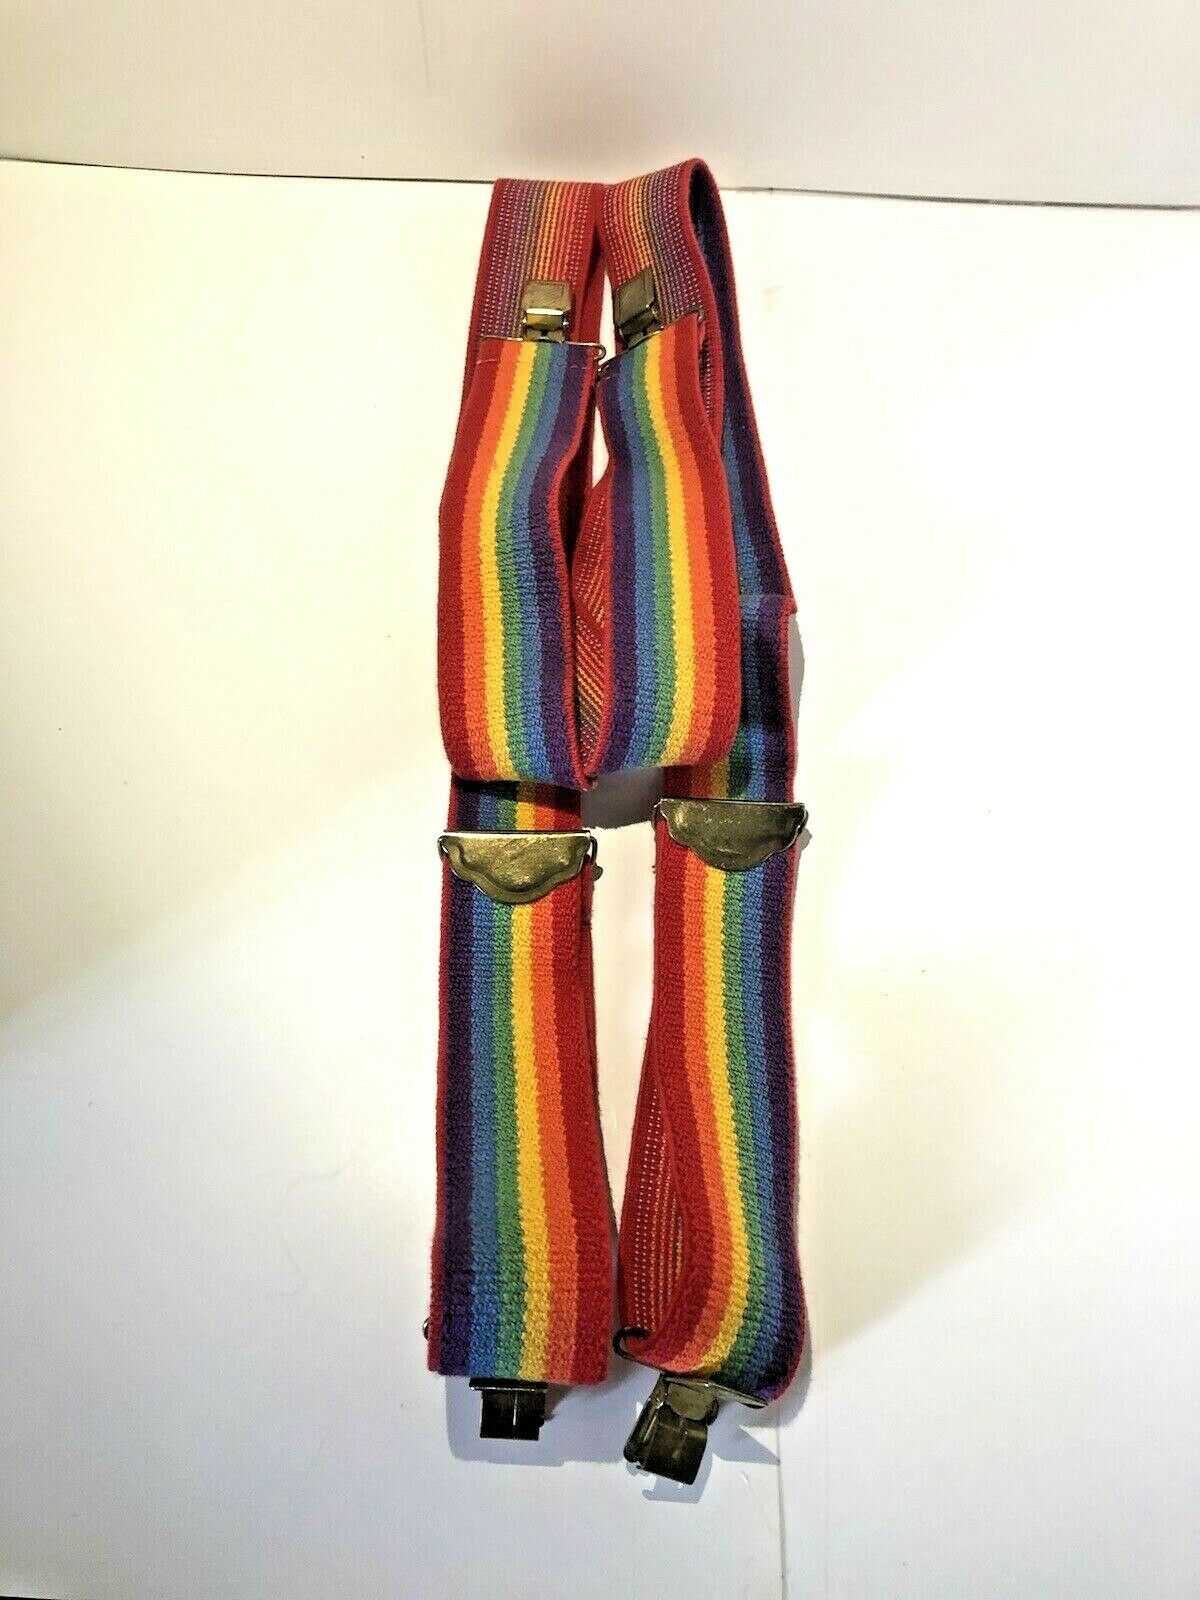 Vintage 80s Rainbow Adjustable Suspenders Reminiscent Of Mork & Mindy